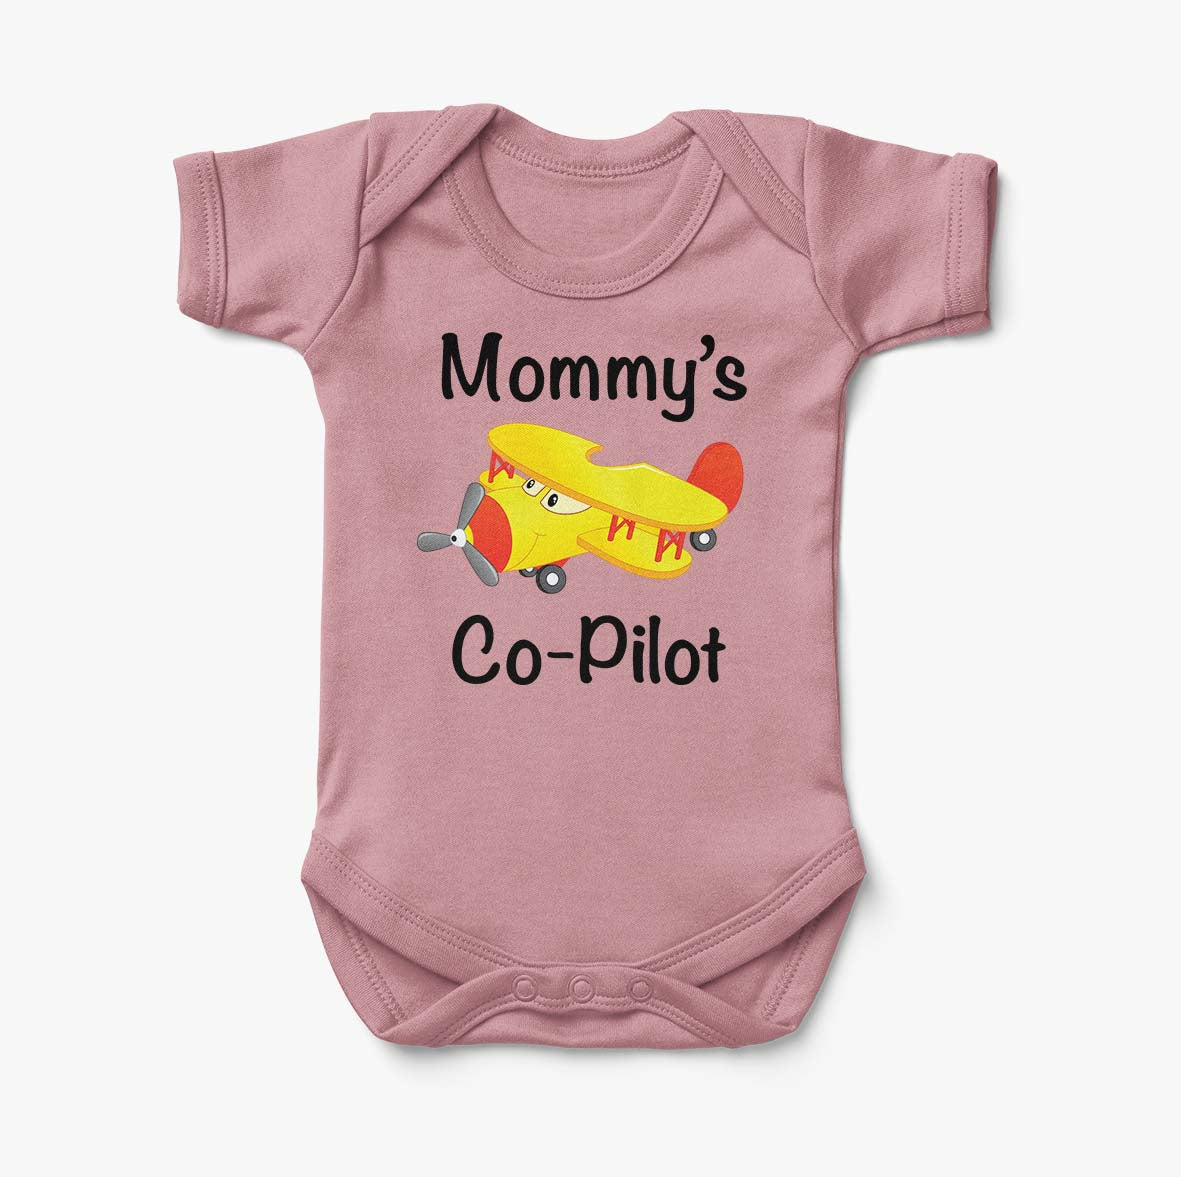 Mommy's Co-Pilot (Propeller2) Designed Baby Bodysuits